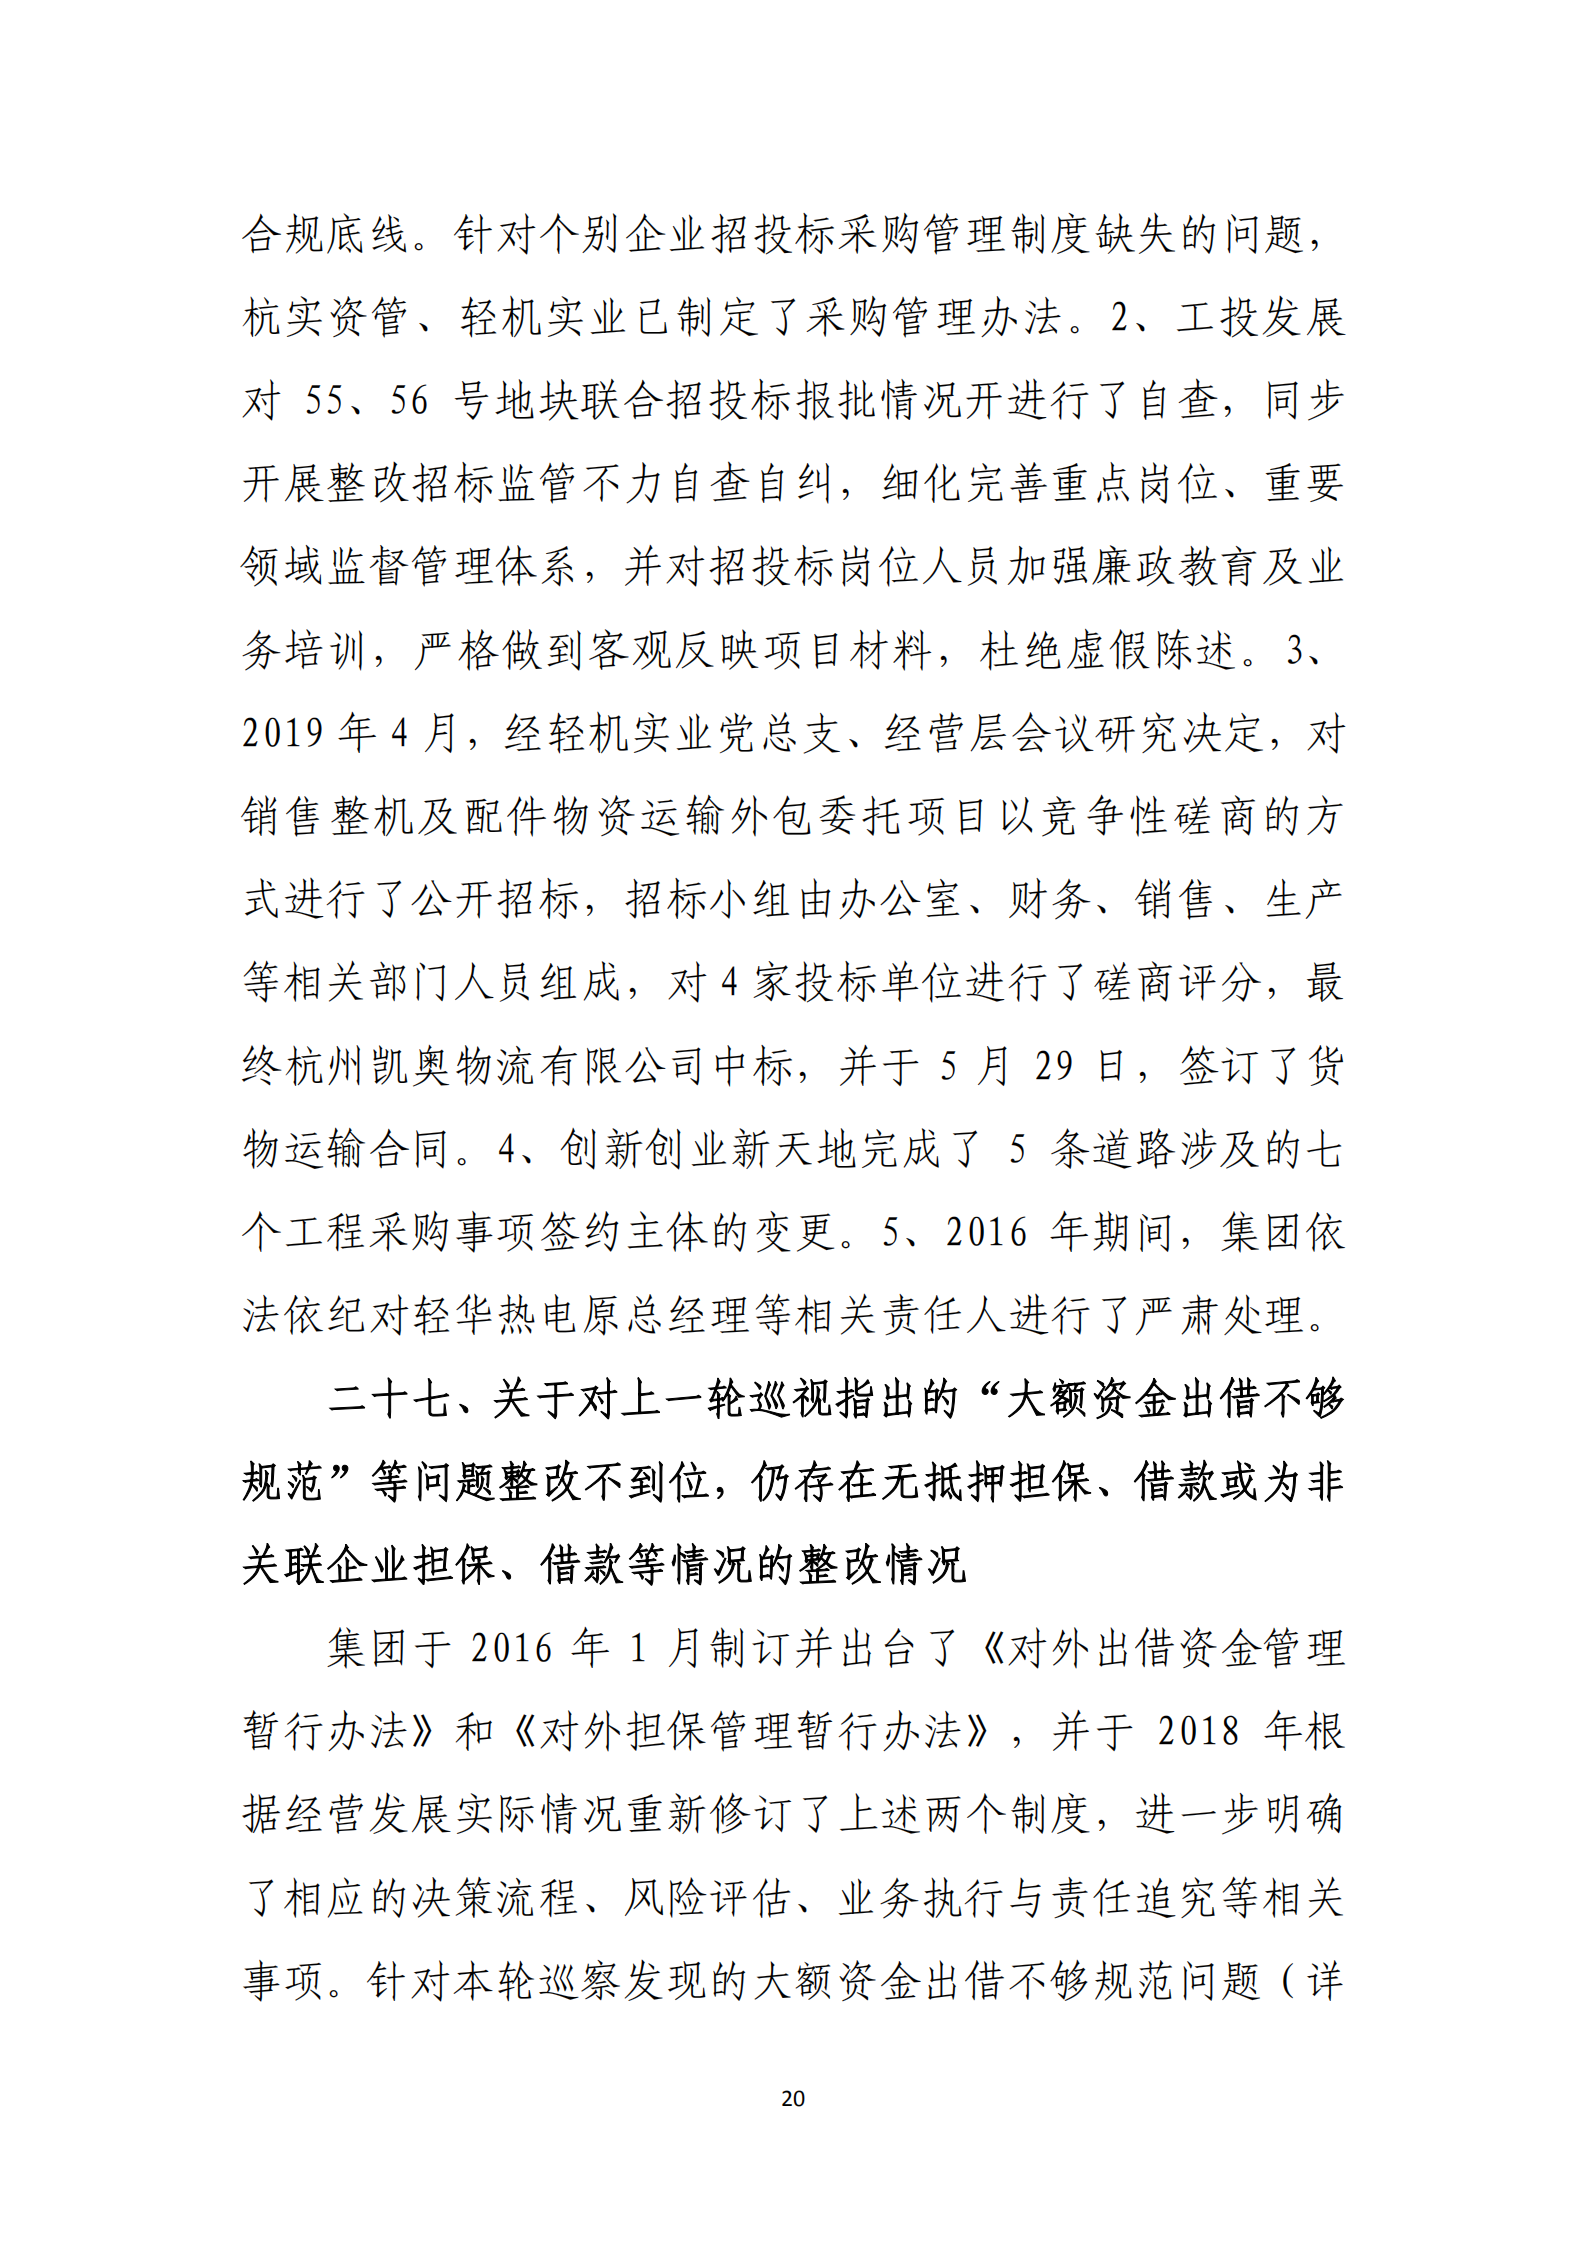 大阳城集团娱乐游戏党委关于巡察整改情况的通报_19.png